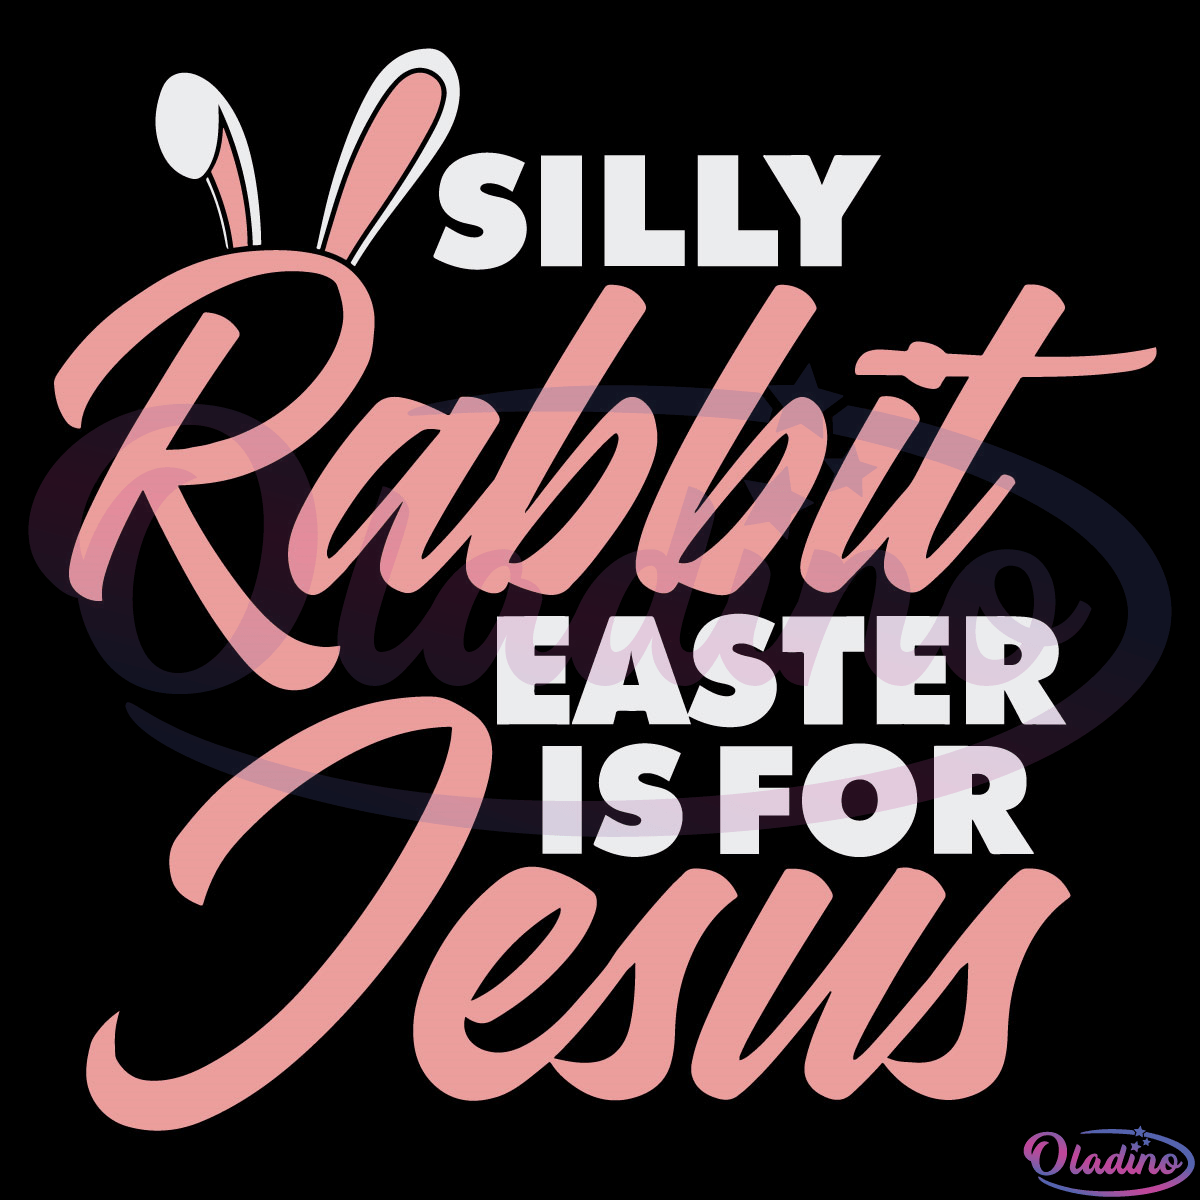 Silly rabbit easter is for jesus SVG Digital File, Easter Svg